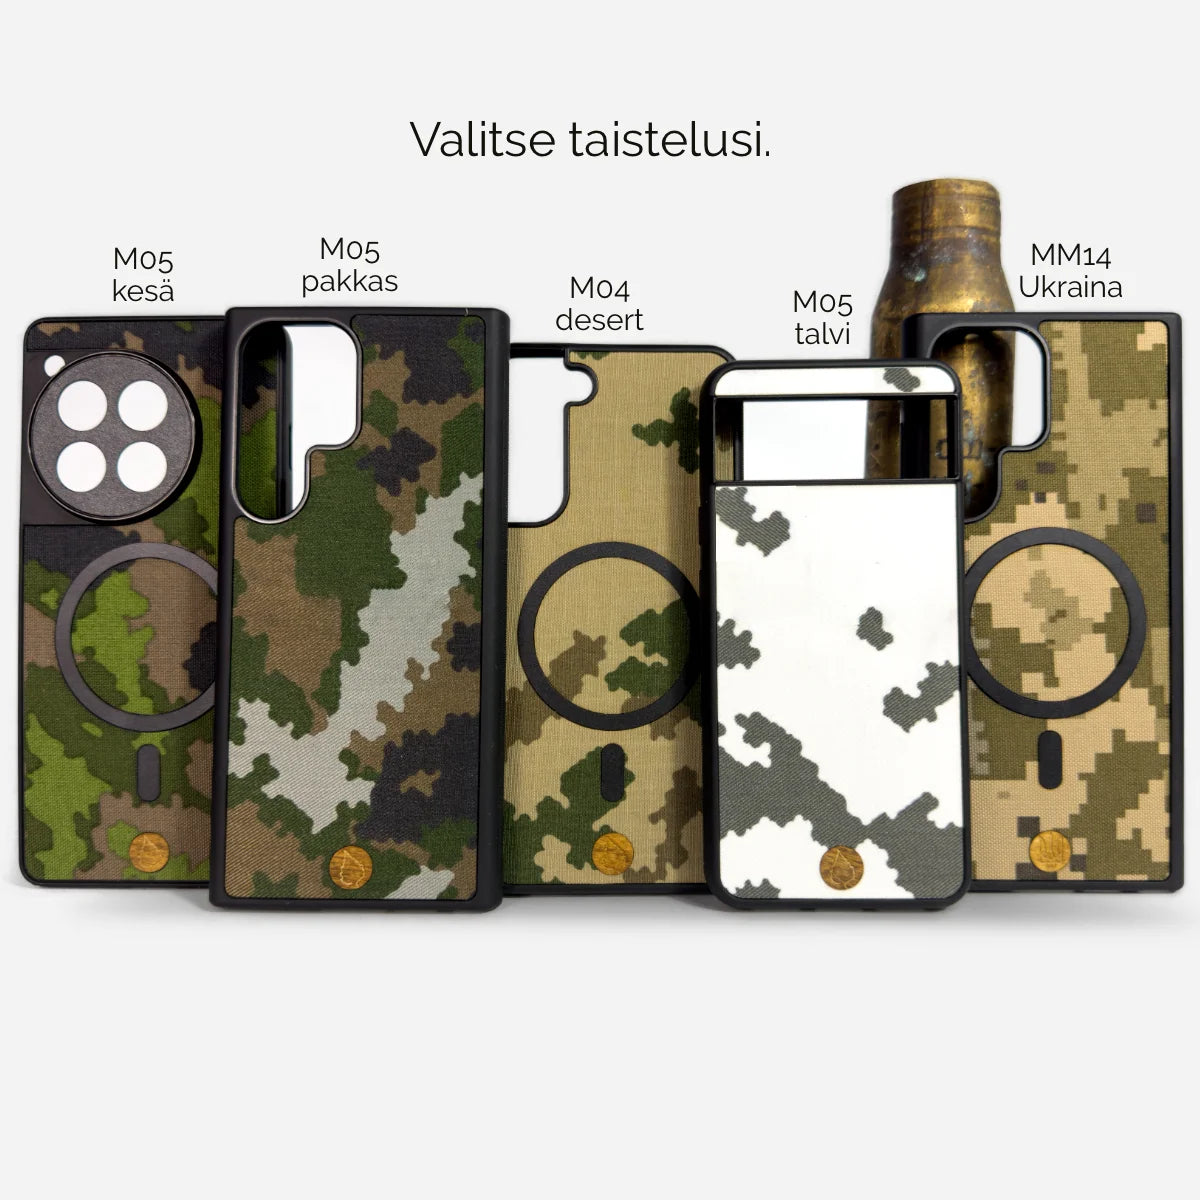 Suojaa puhelimesi tyylikkäästi aidolla M05-metsäkamokuvioidulla puhelinkotelolla. Valmistettu suomalaisesta armeijan M05-kankaasta ja iskunkestävästä muovista. Luonnollinen puuyksityiskohta. Toimitus 1-3 päivässä.